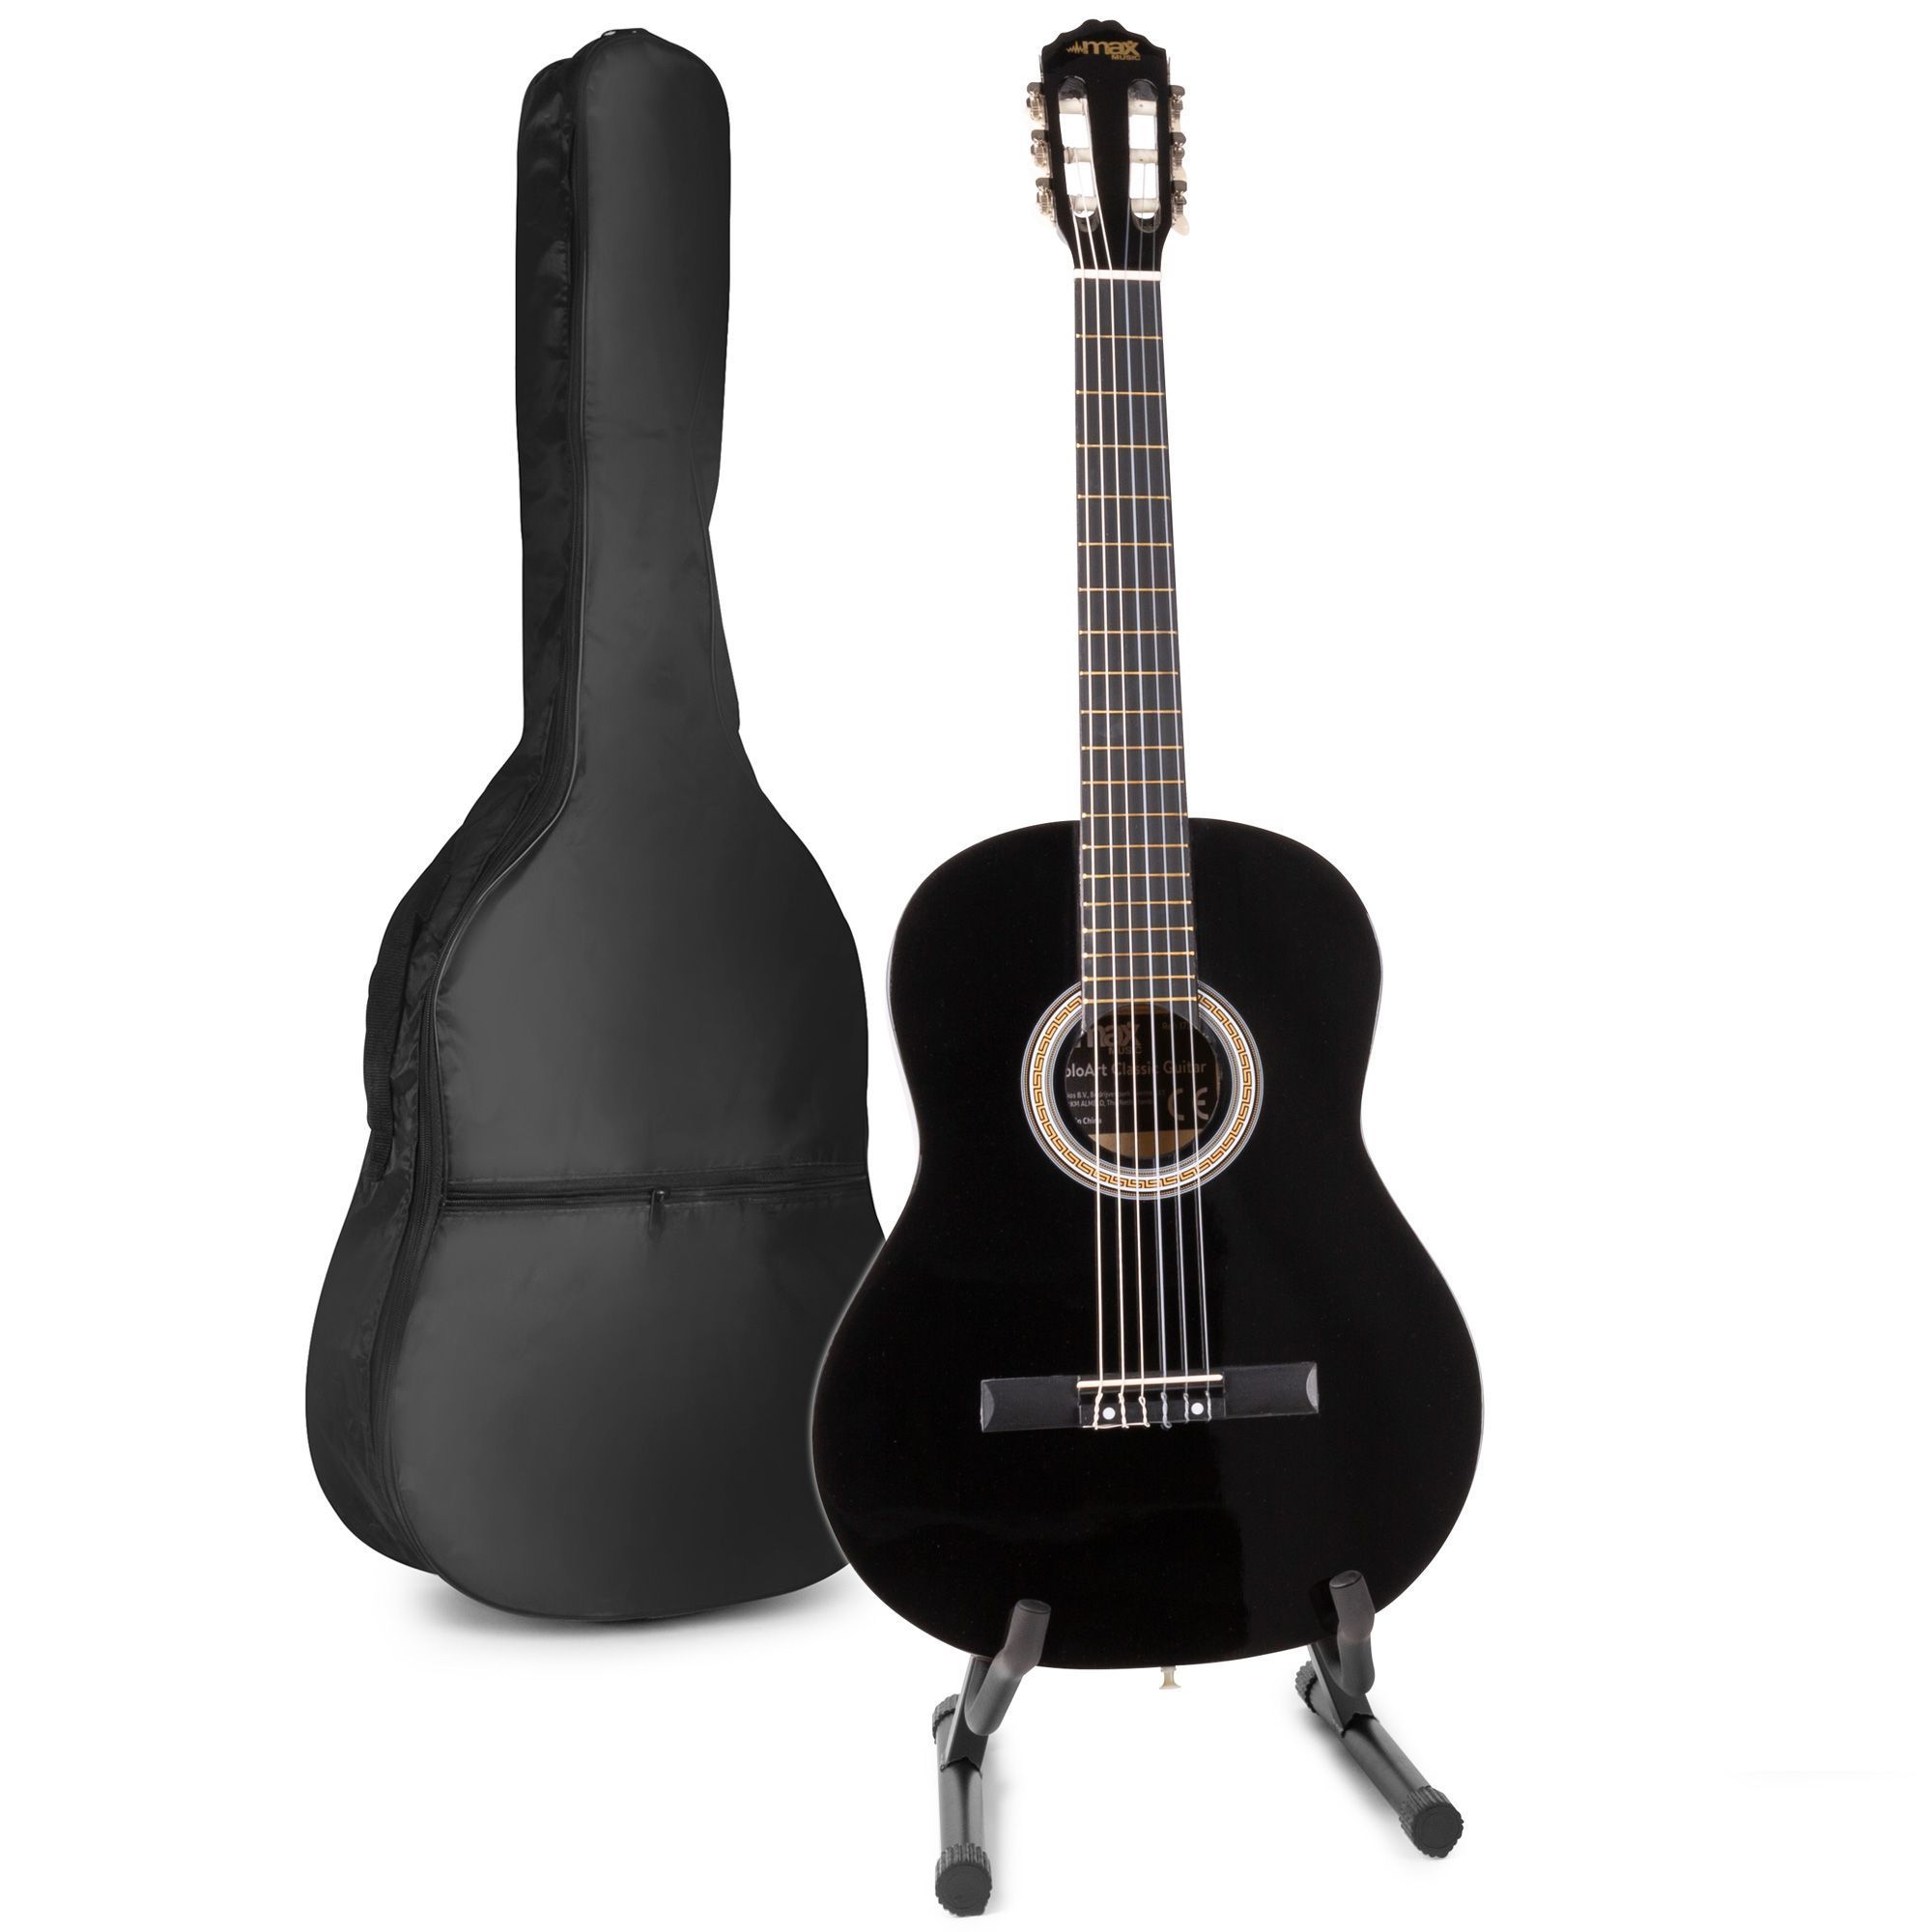 het winkelcentrum bagage Monarchie MAX SoloArt klassieke akoestische gitaar met gitaarstandaard - Zwart kopen?